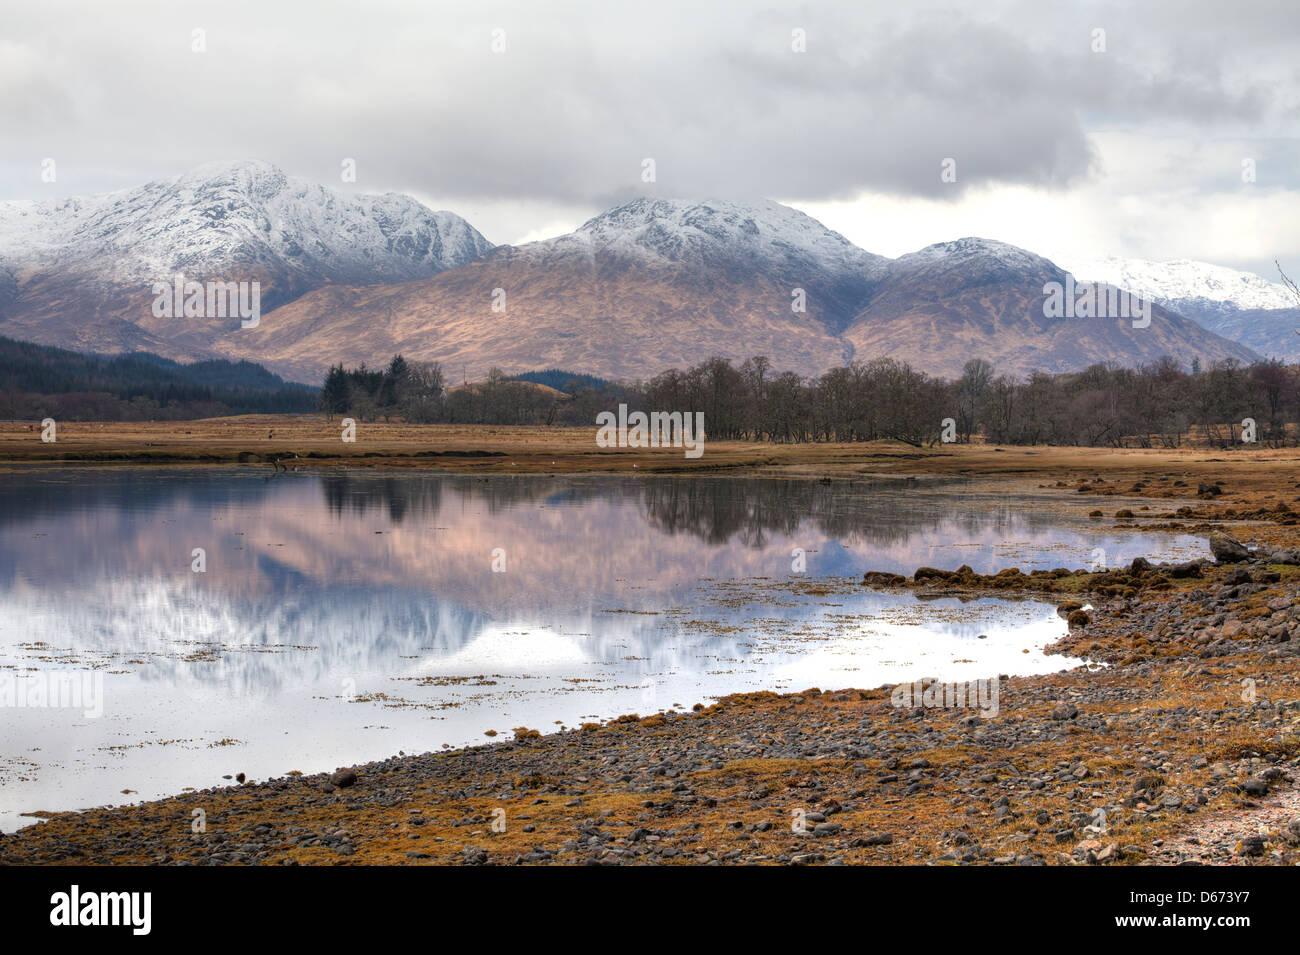 La bella loch eil nel lochaber regione delle Highlands occidentali della Scozia Foto Stock